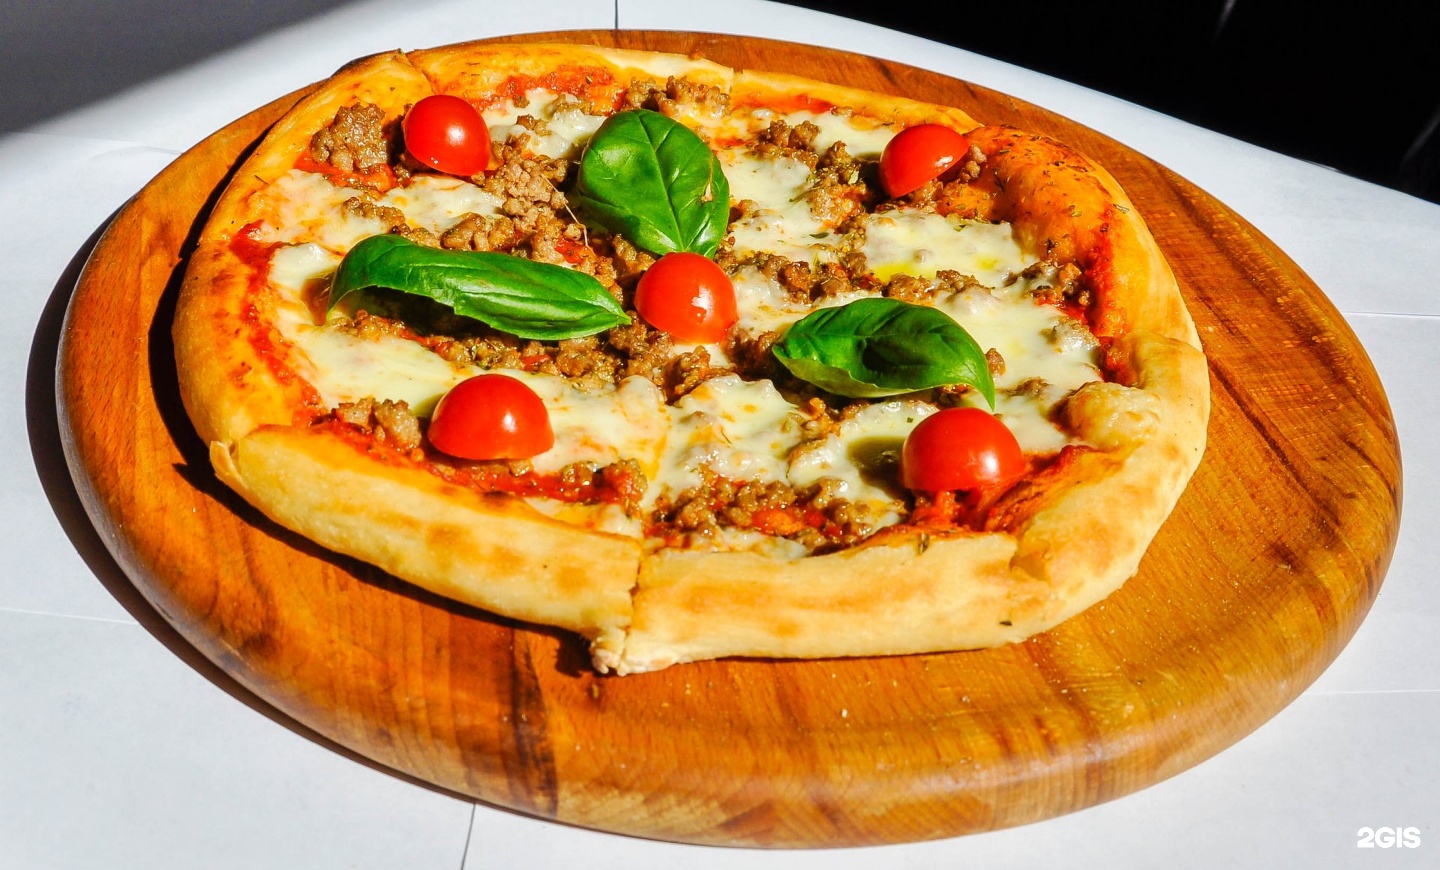 севастополь лучшая пицца в фото 104